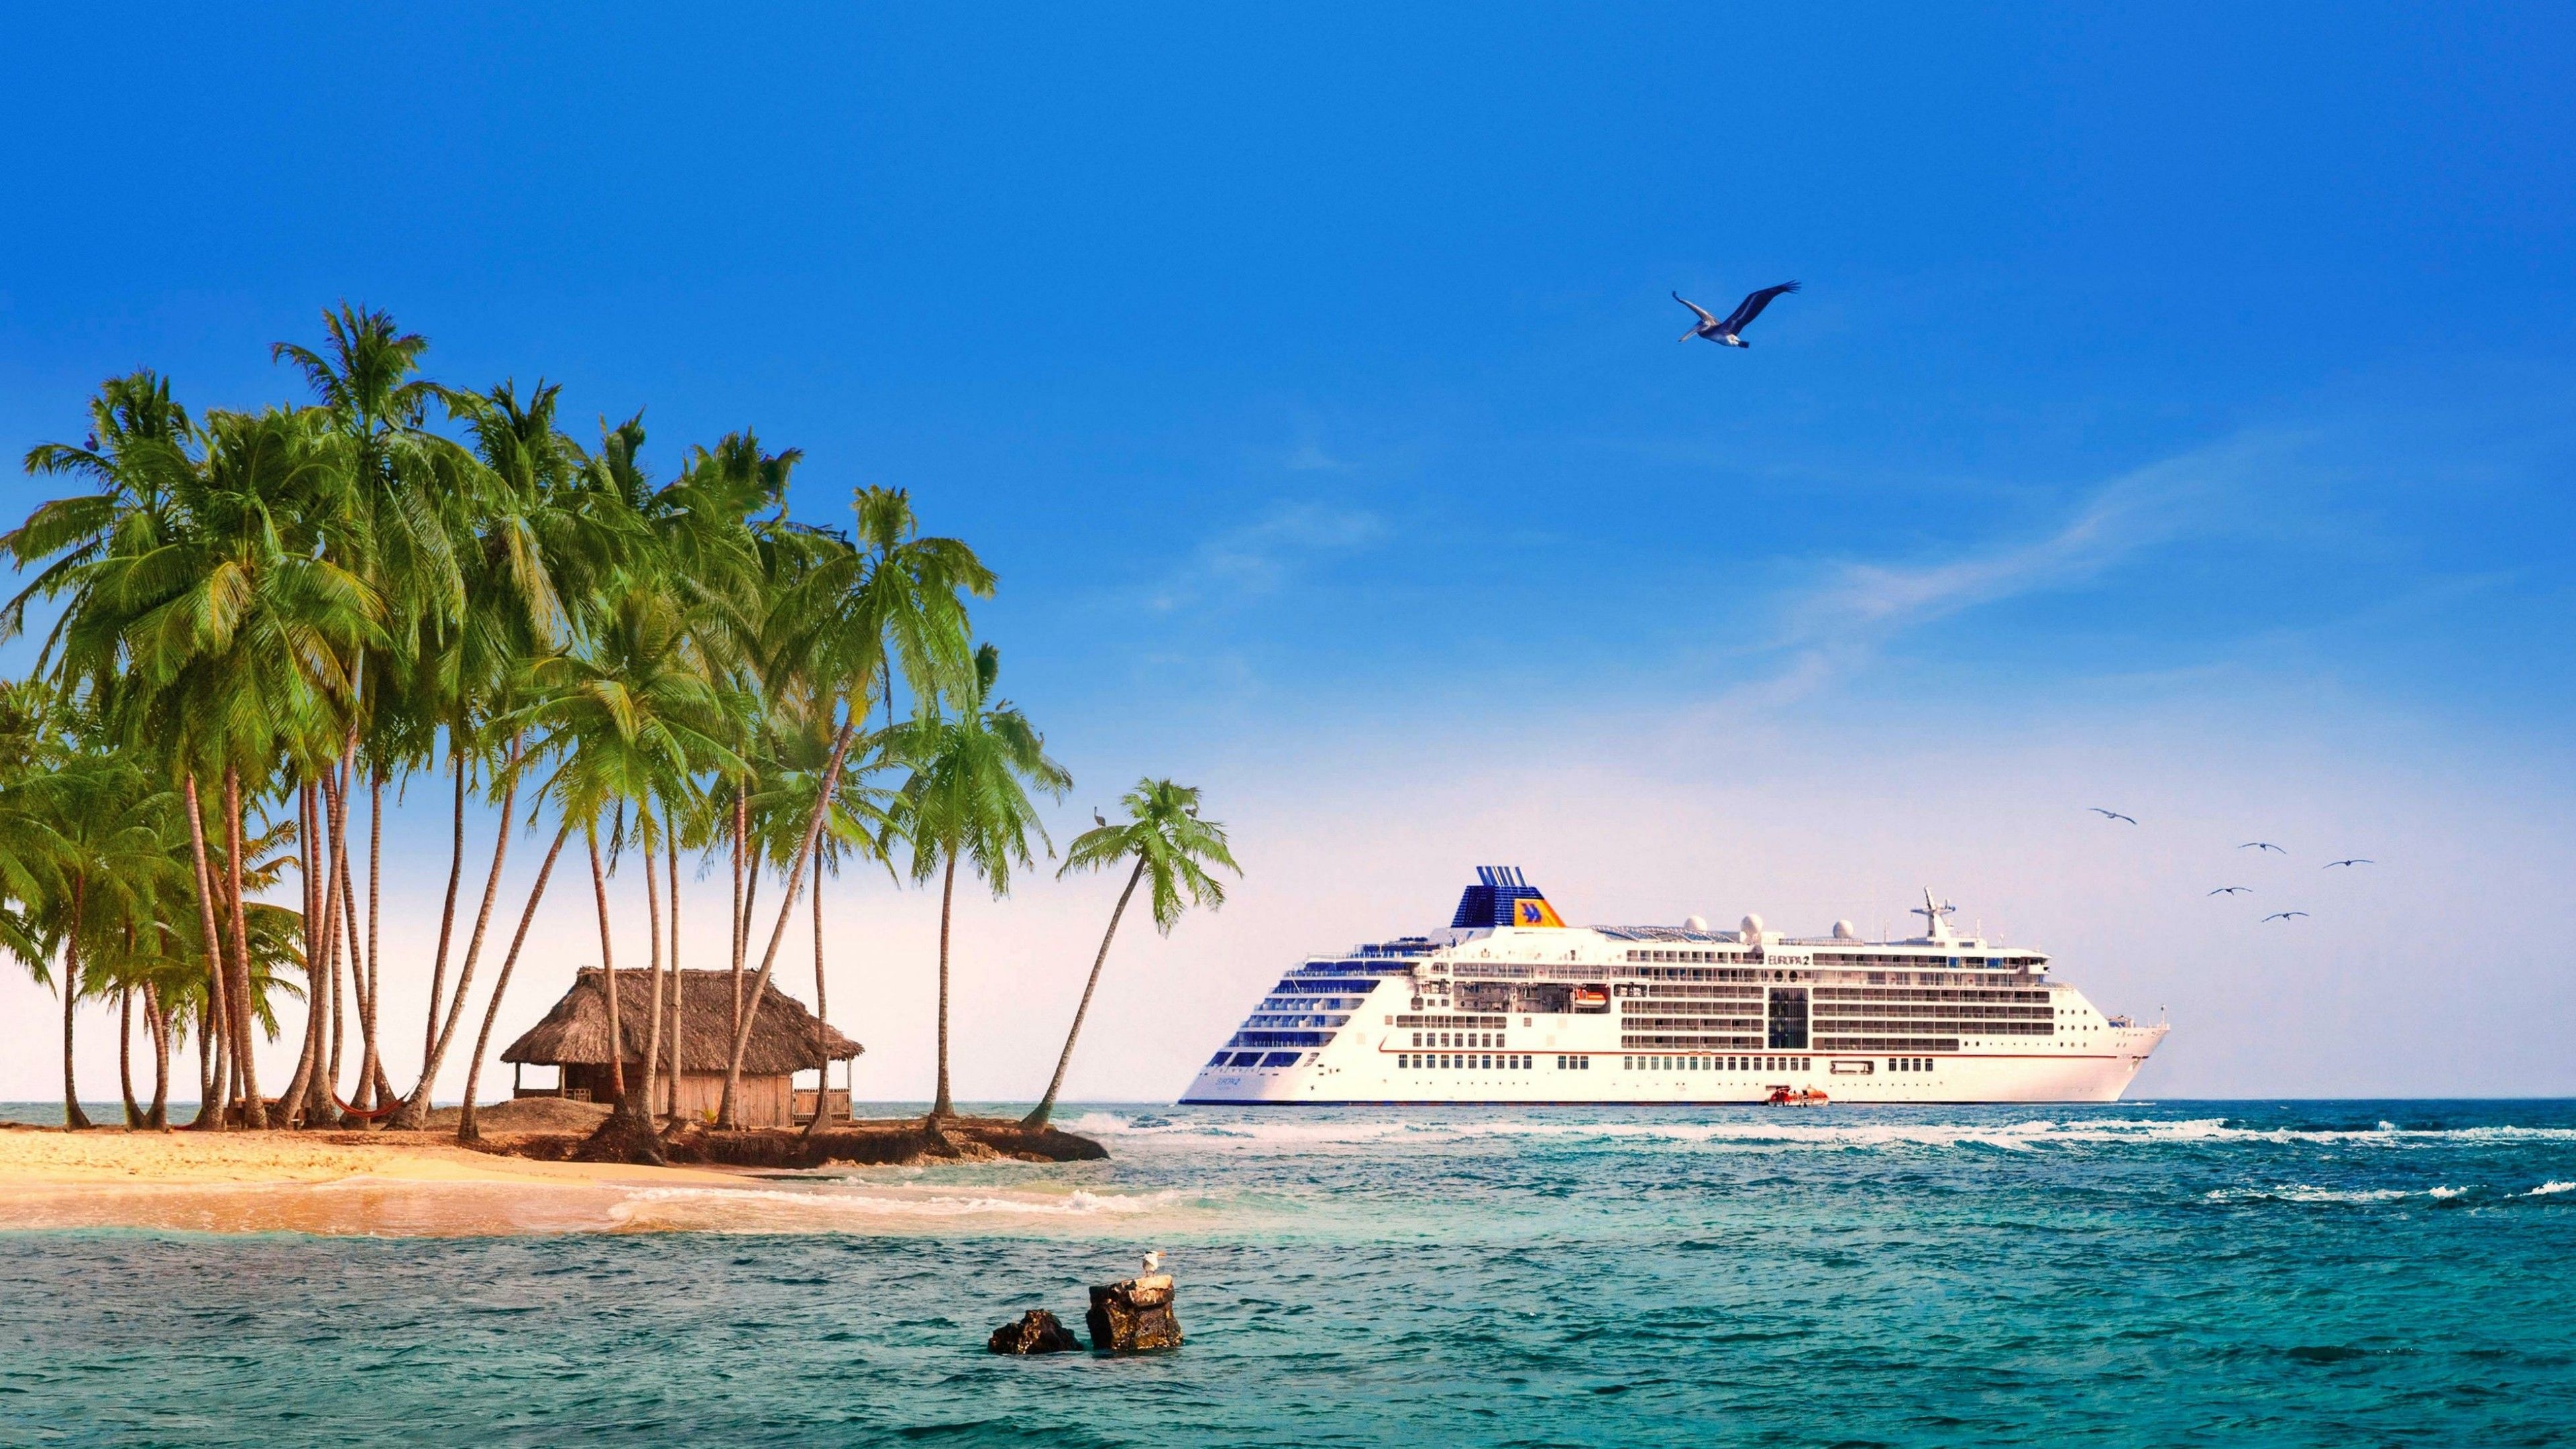 4K Ultra HD, Cruise ships, Imposing vessels, Luxury travel, 3840x2160 4K Desktop